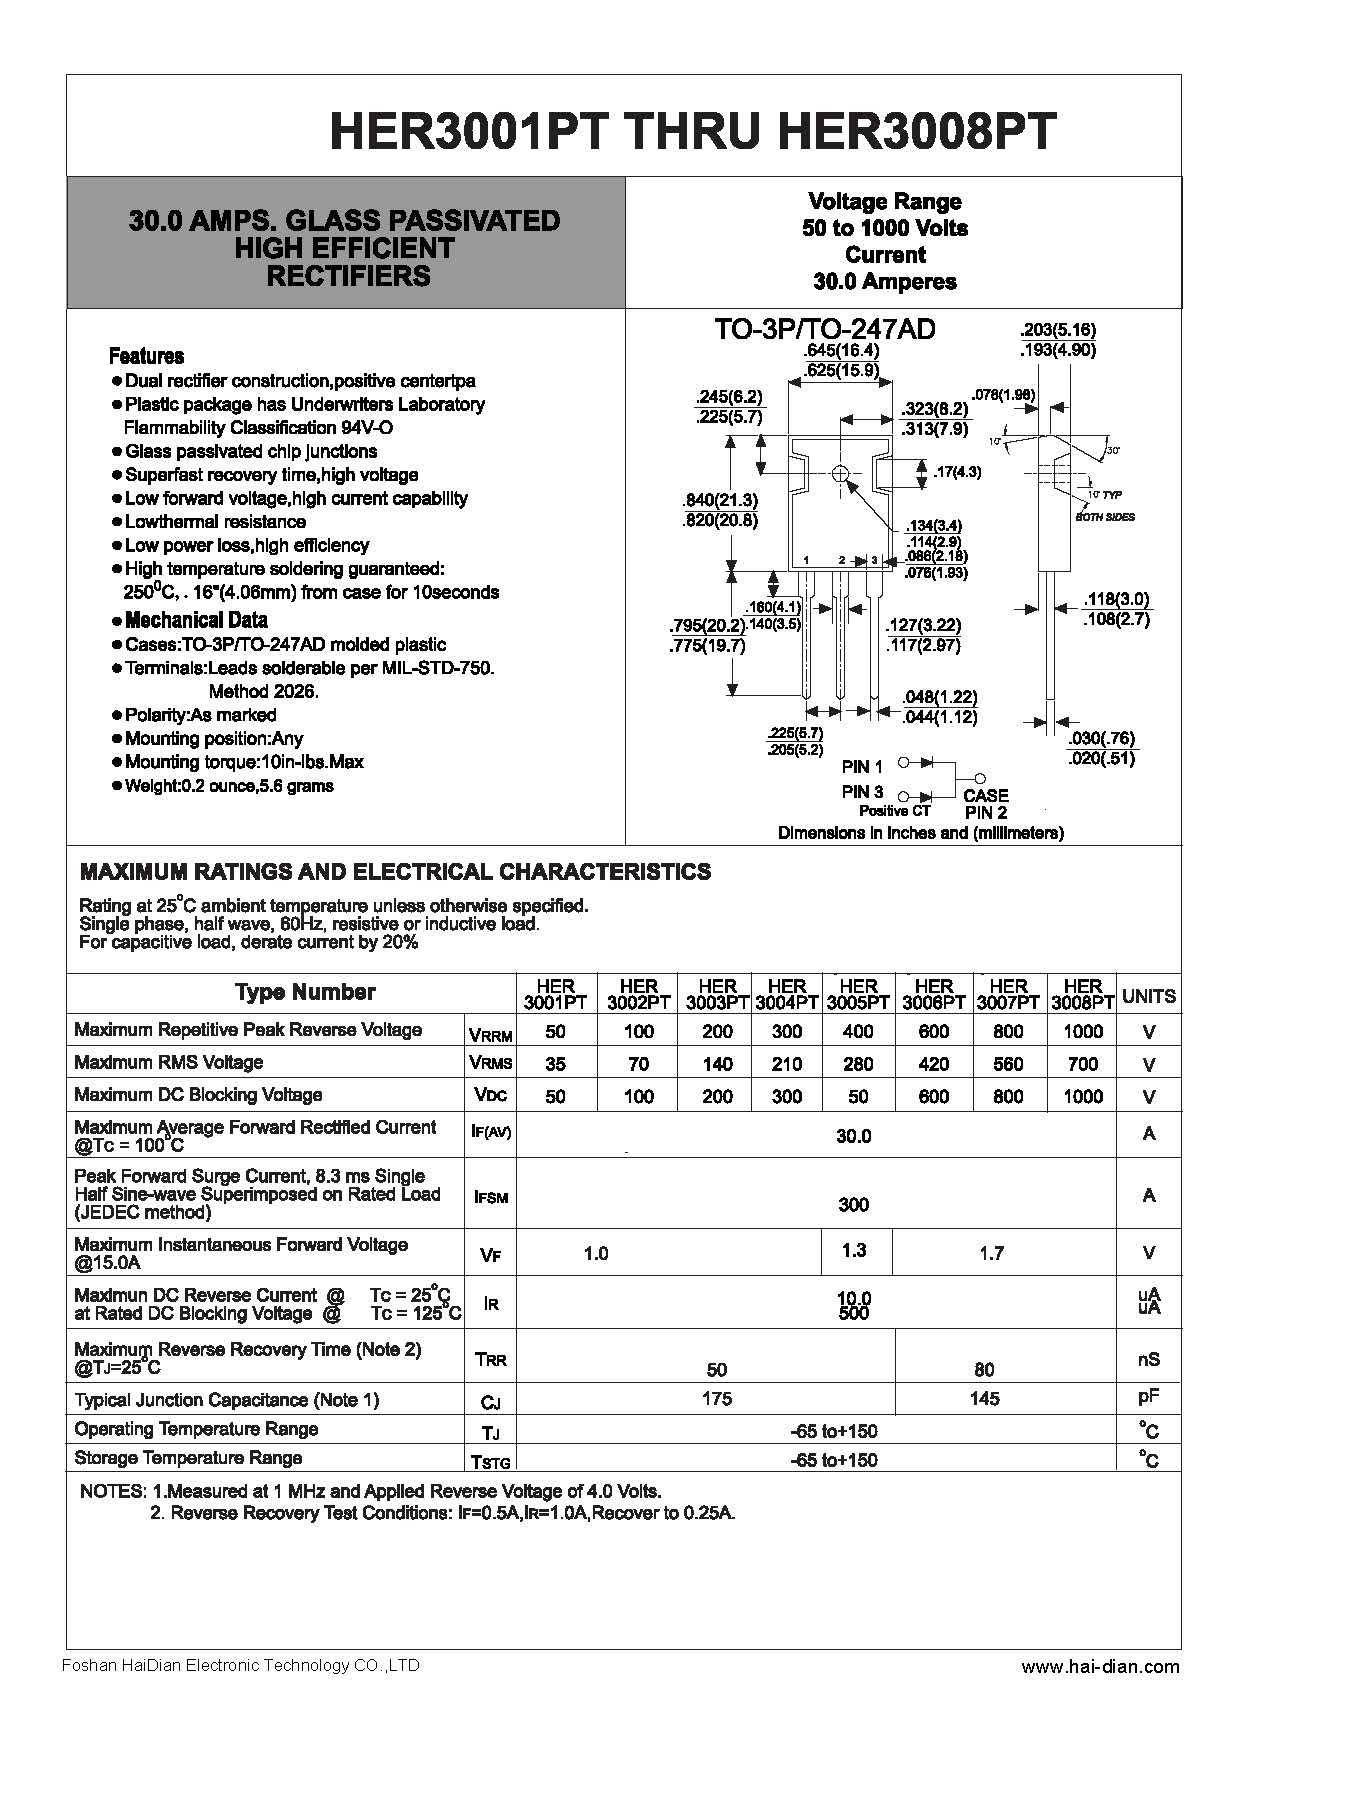 HER3001PT高效整流二极管-- 佛山海电电子科技有限公司